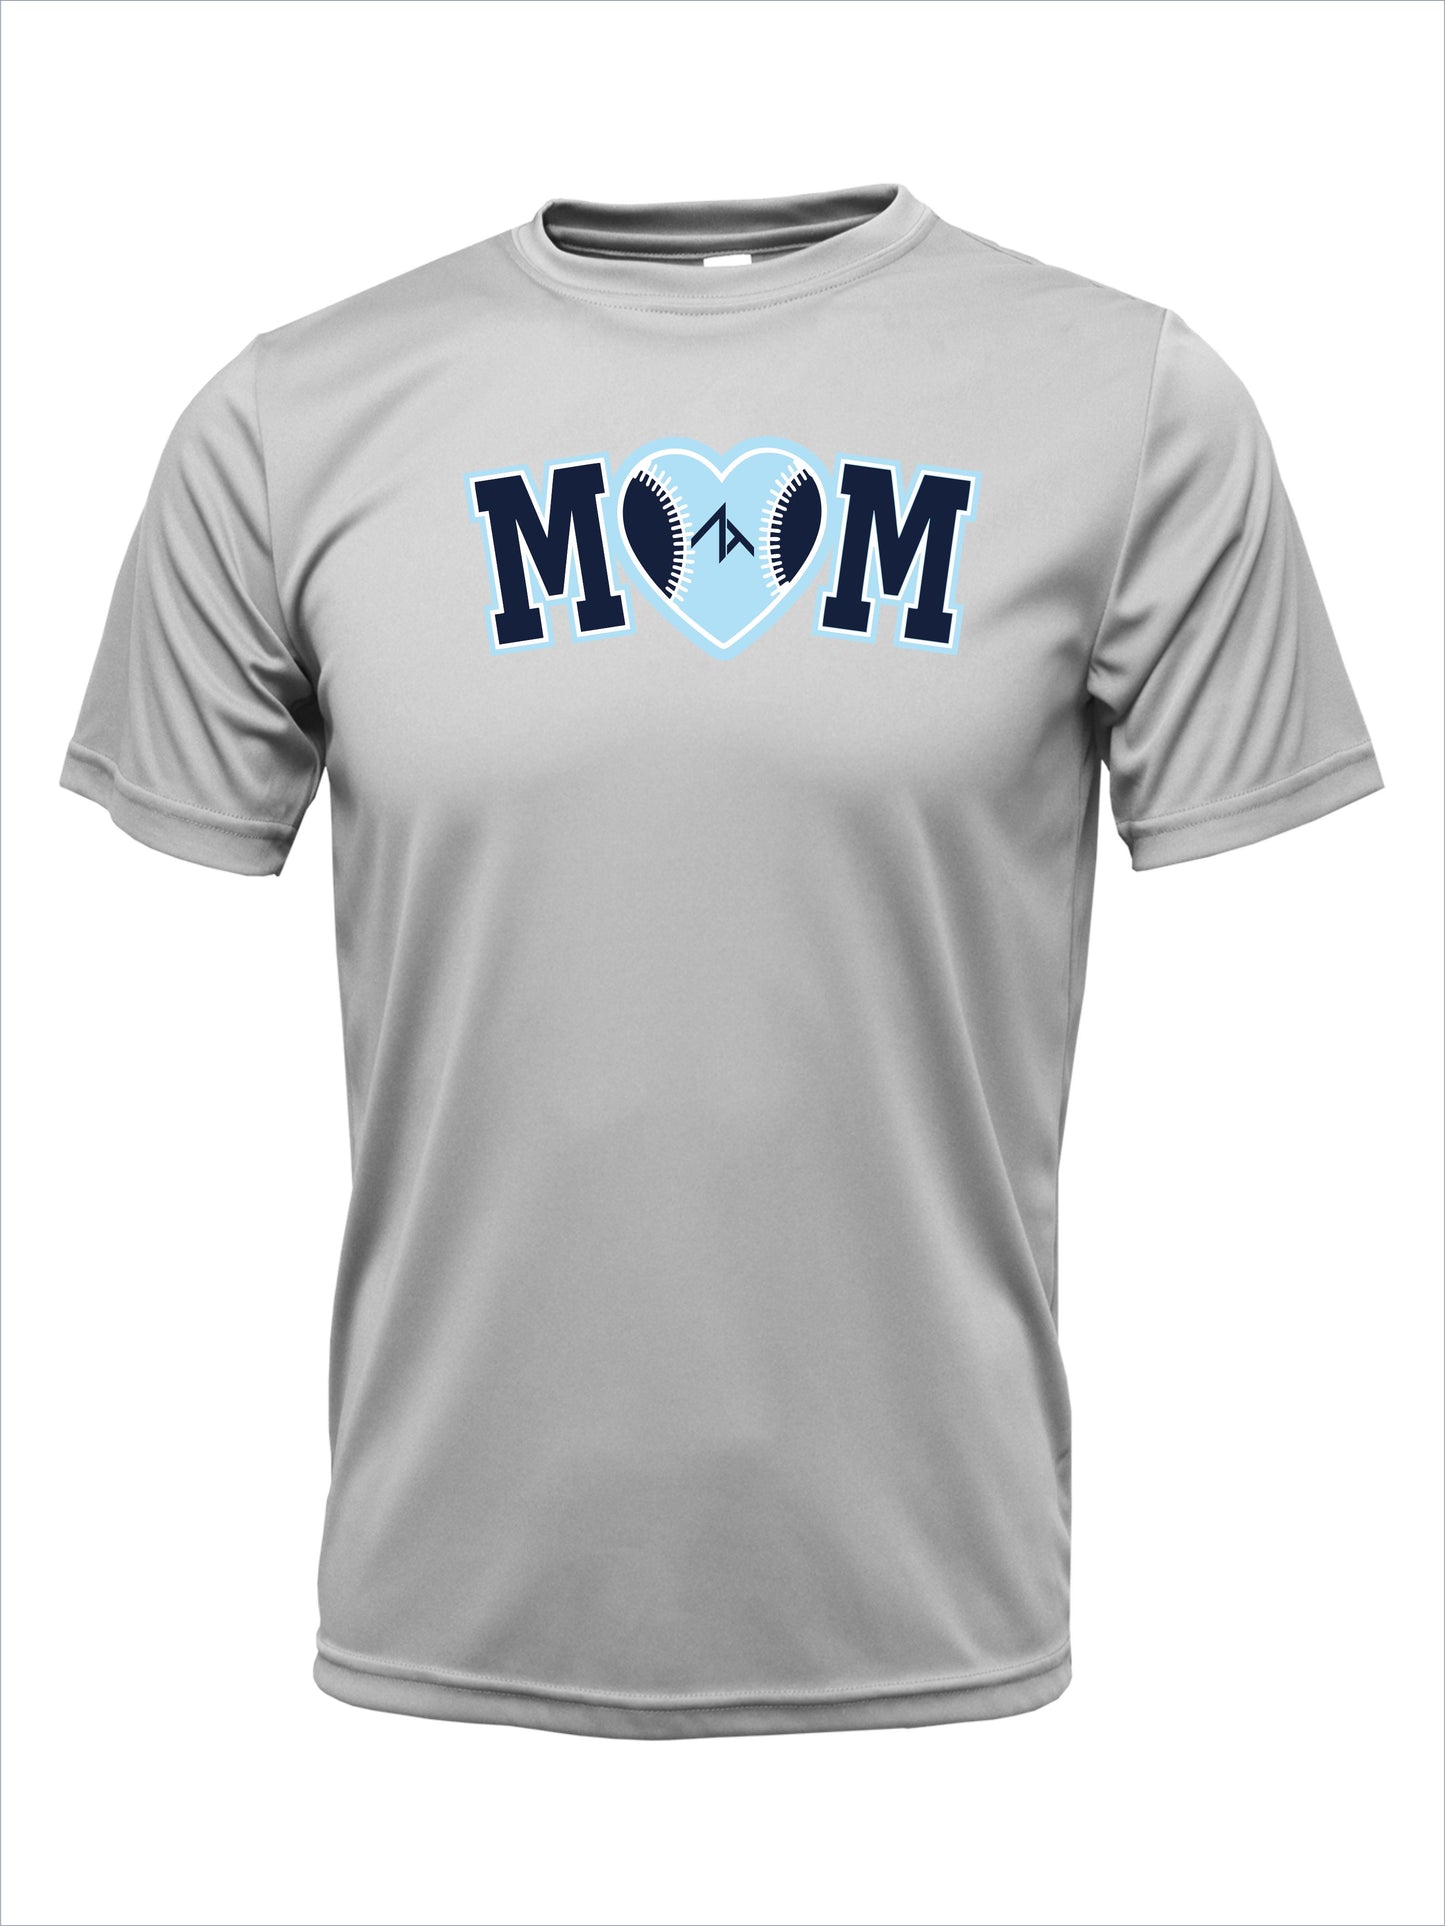 Short Sleeve "ZT MOM" Cotton T-Shirt